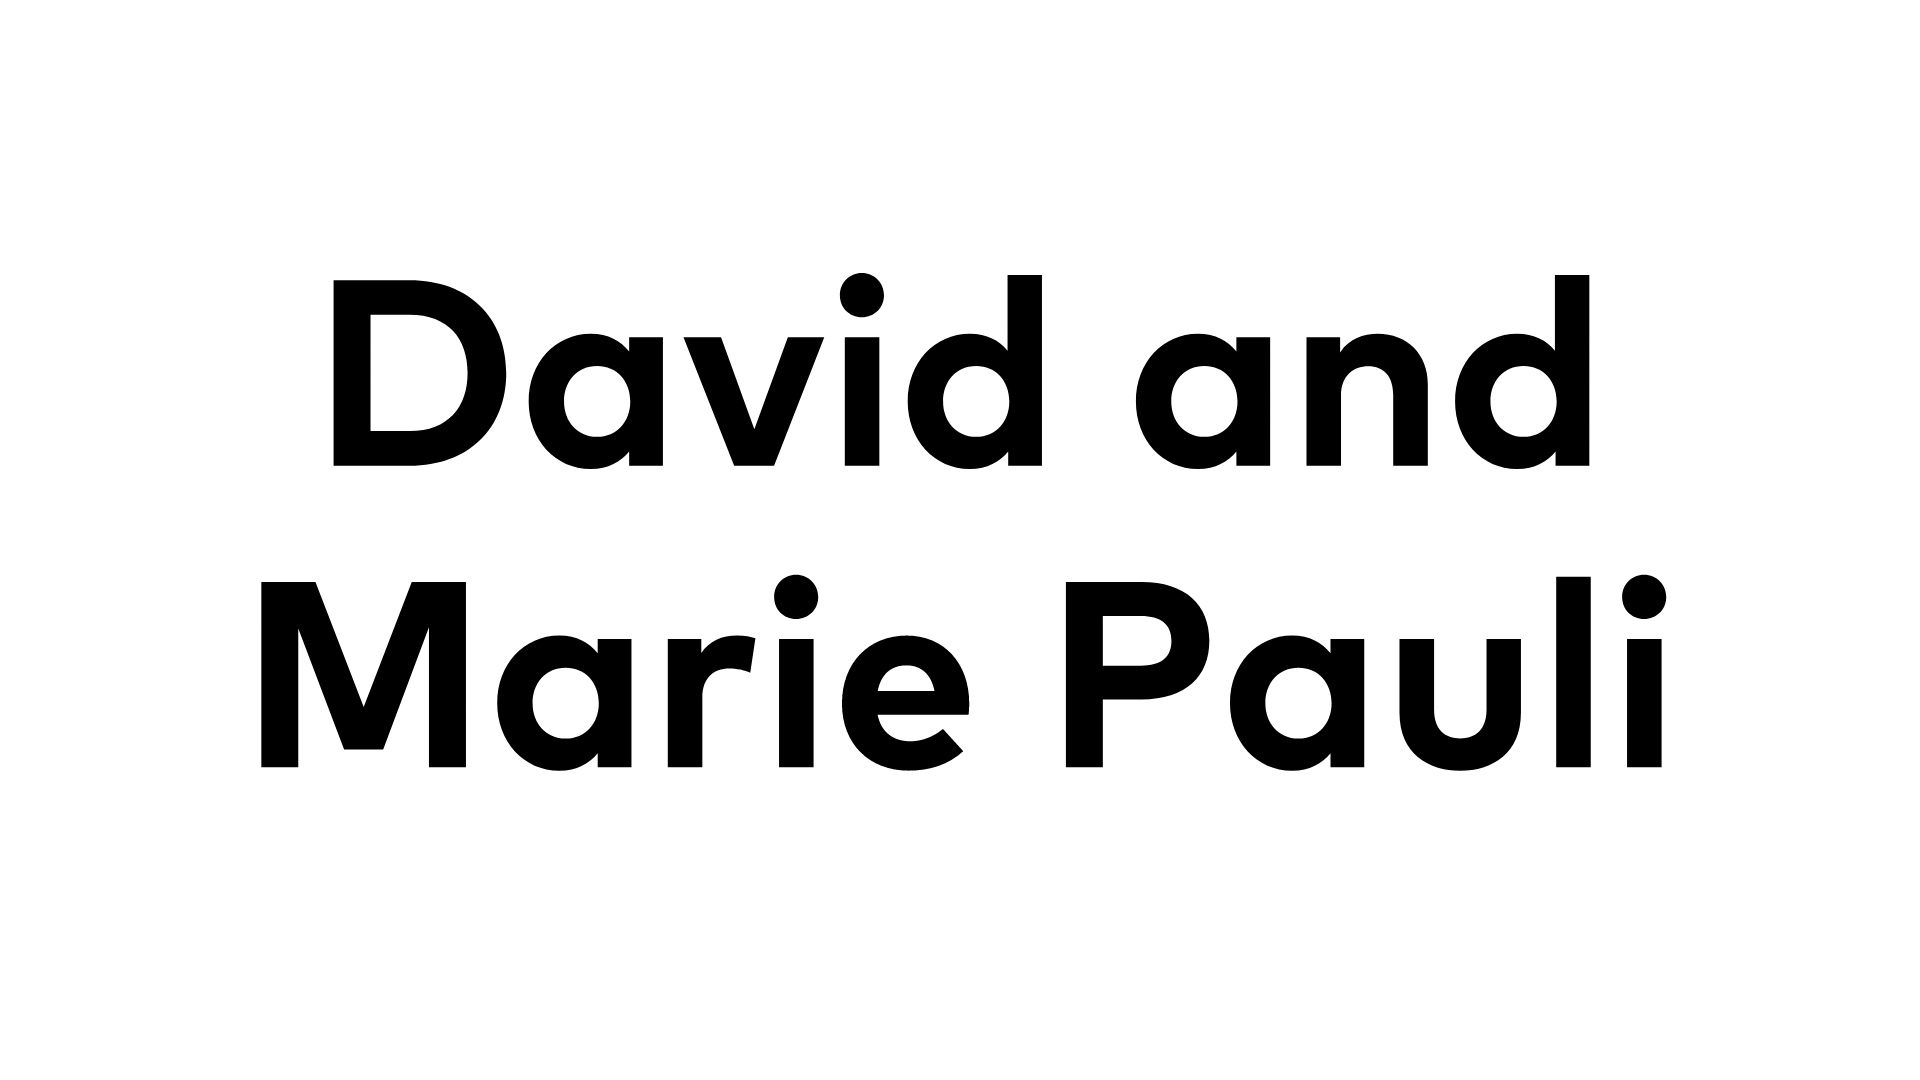 David and Marie Pauli David and Marie Pauli